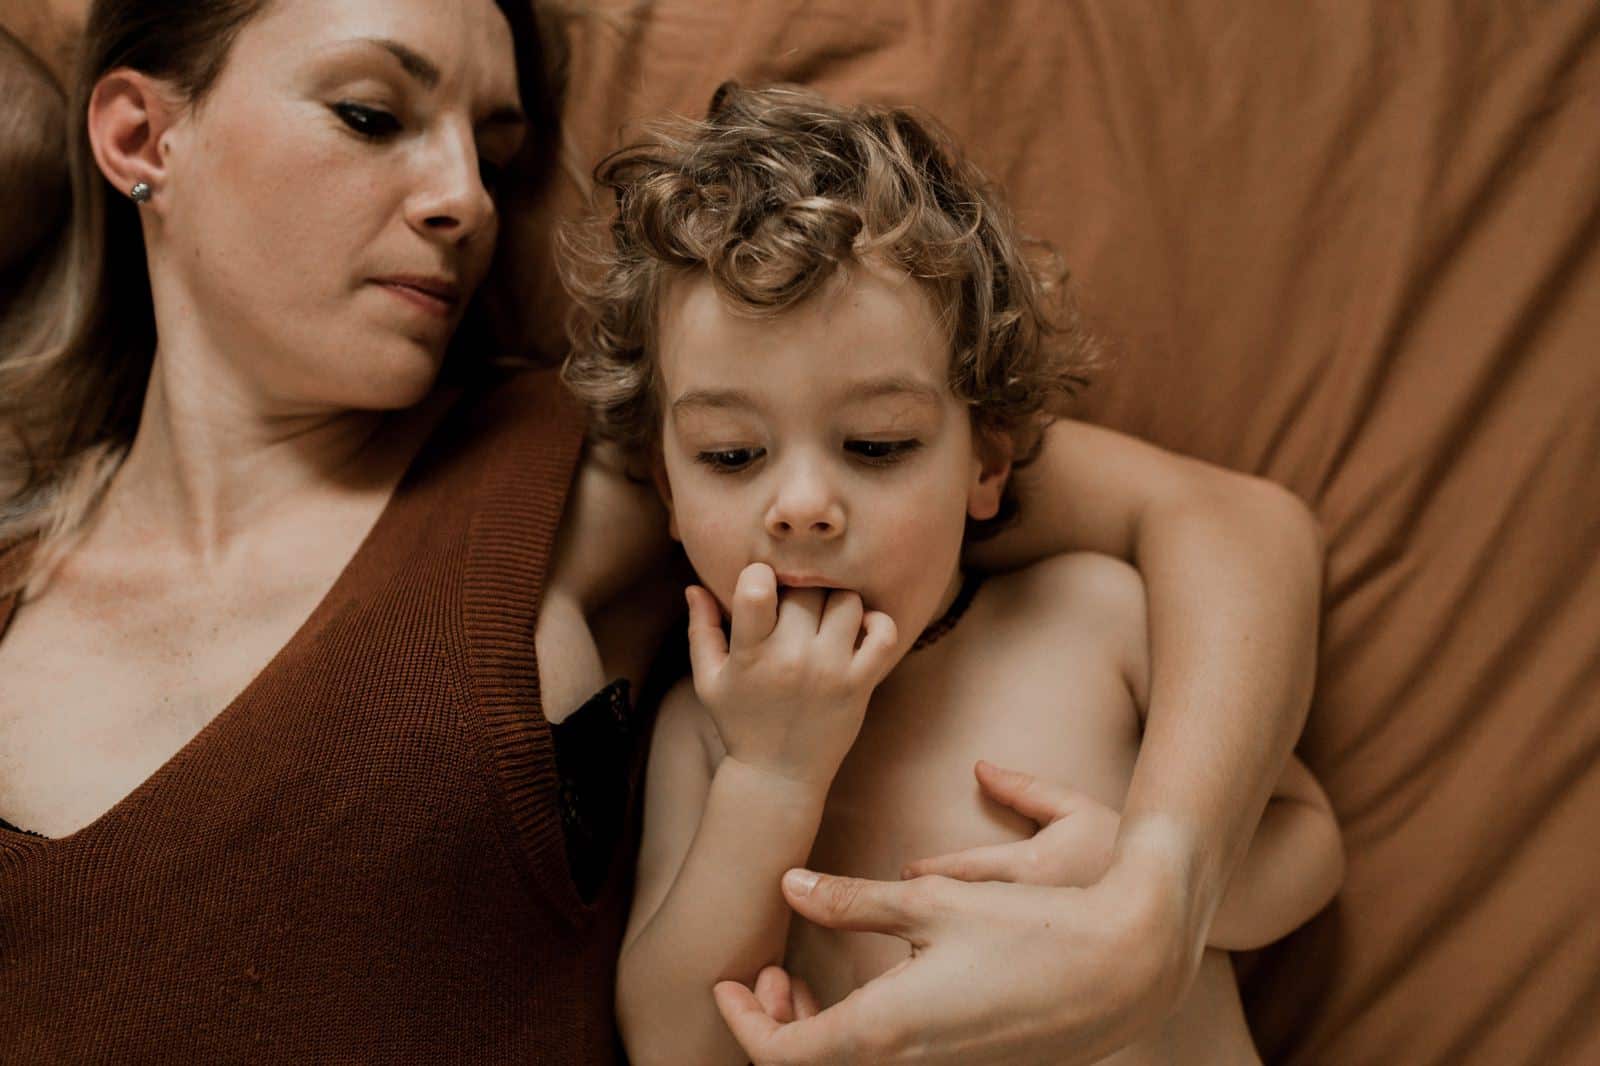 photographe vidéaste allaitement maman à caen normandie studio